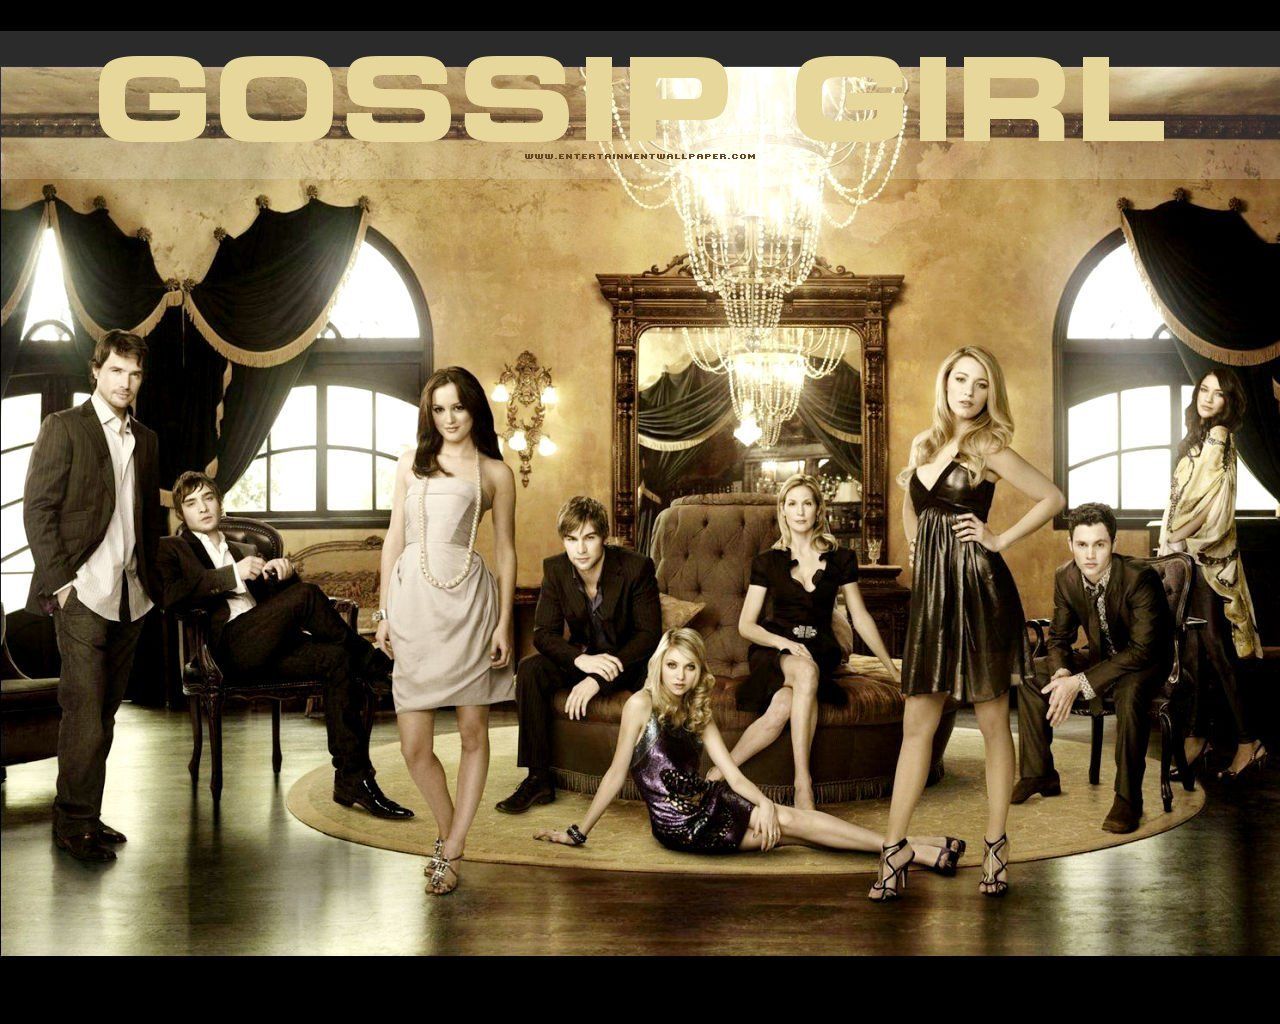 Gossip Girl wallpapers - Gossip Girl Wallpaper (12054791) - Fanpop